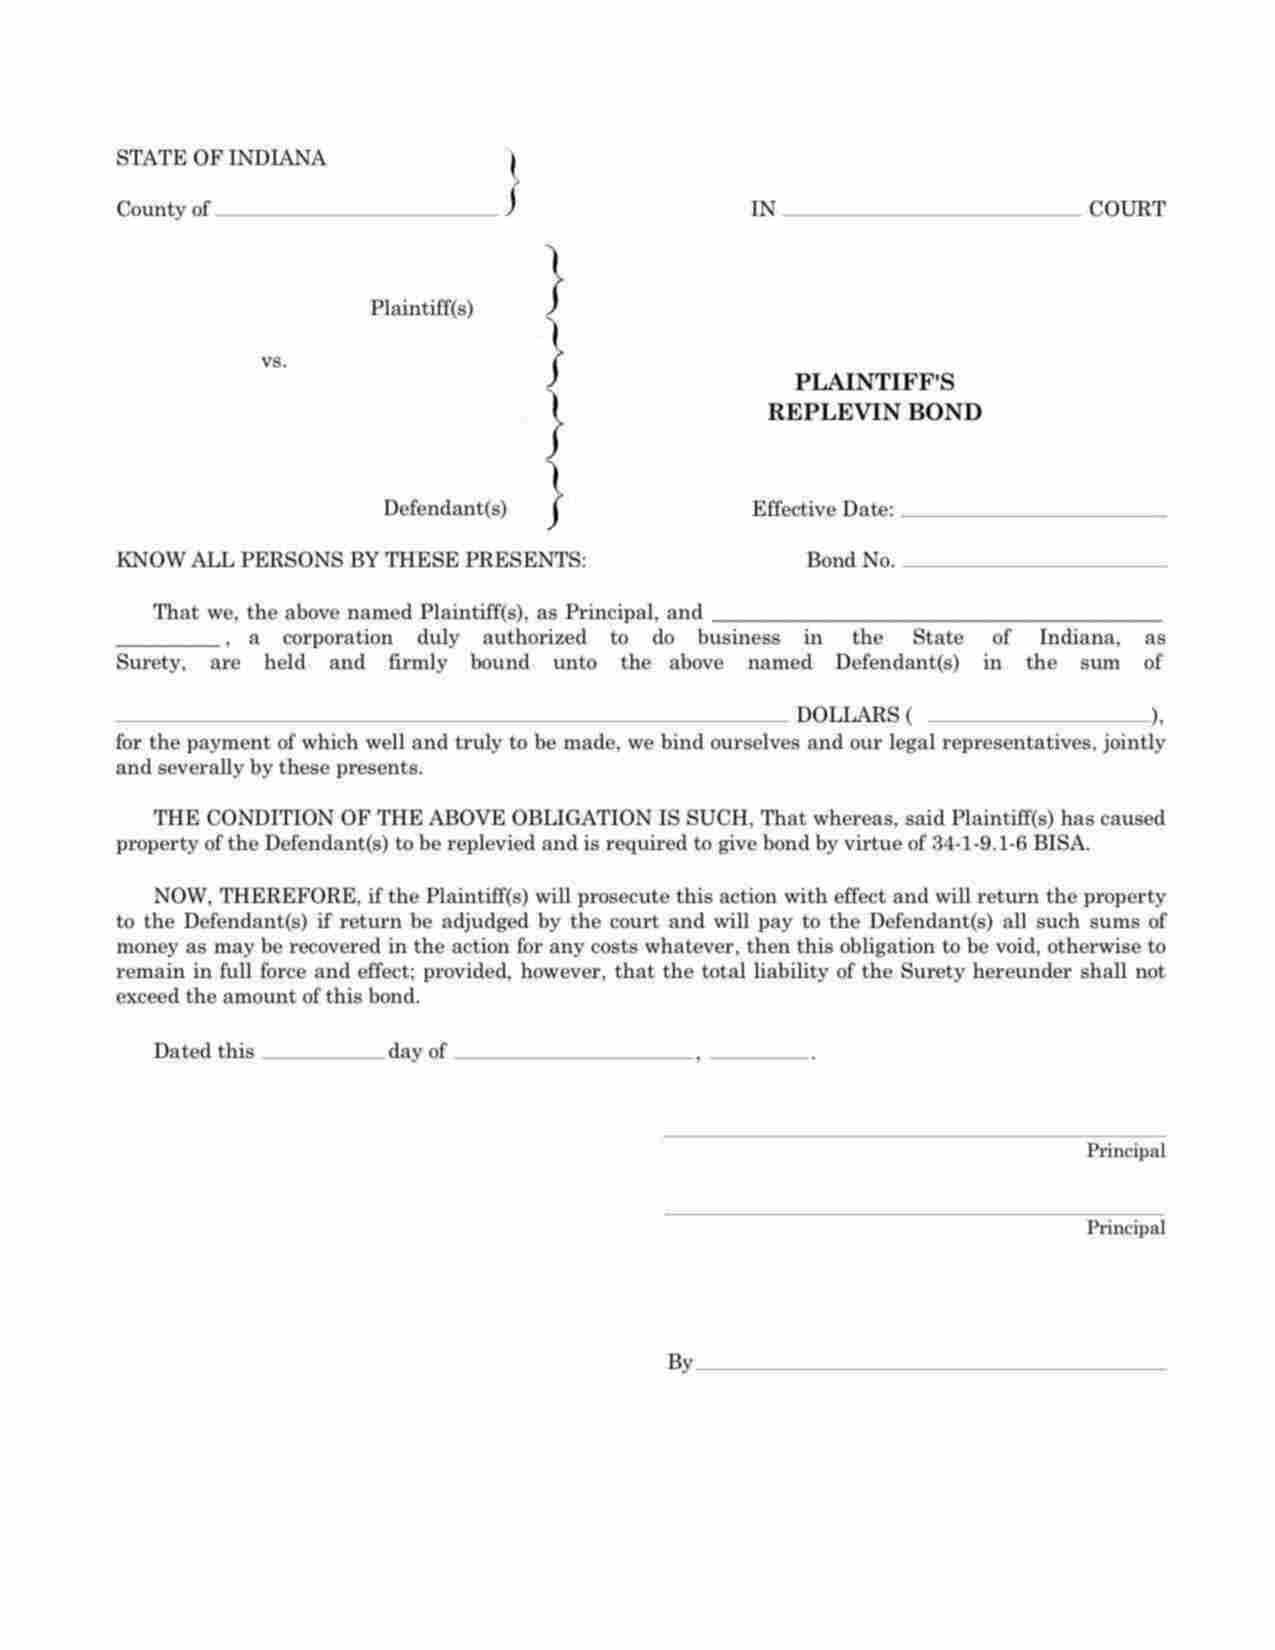 Indiana Plaintiffs Replevin Bond Form